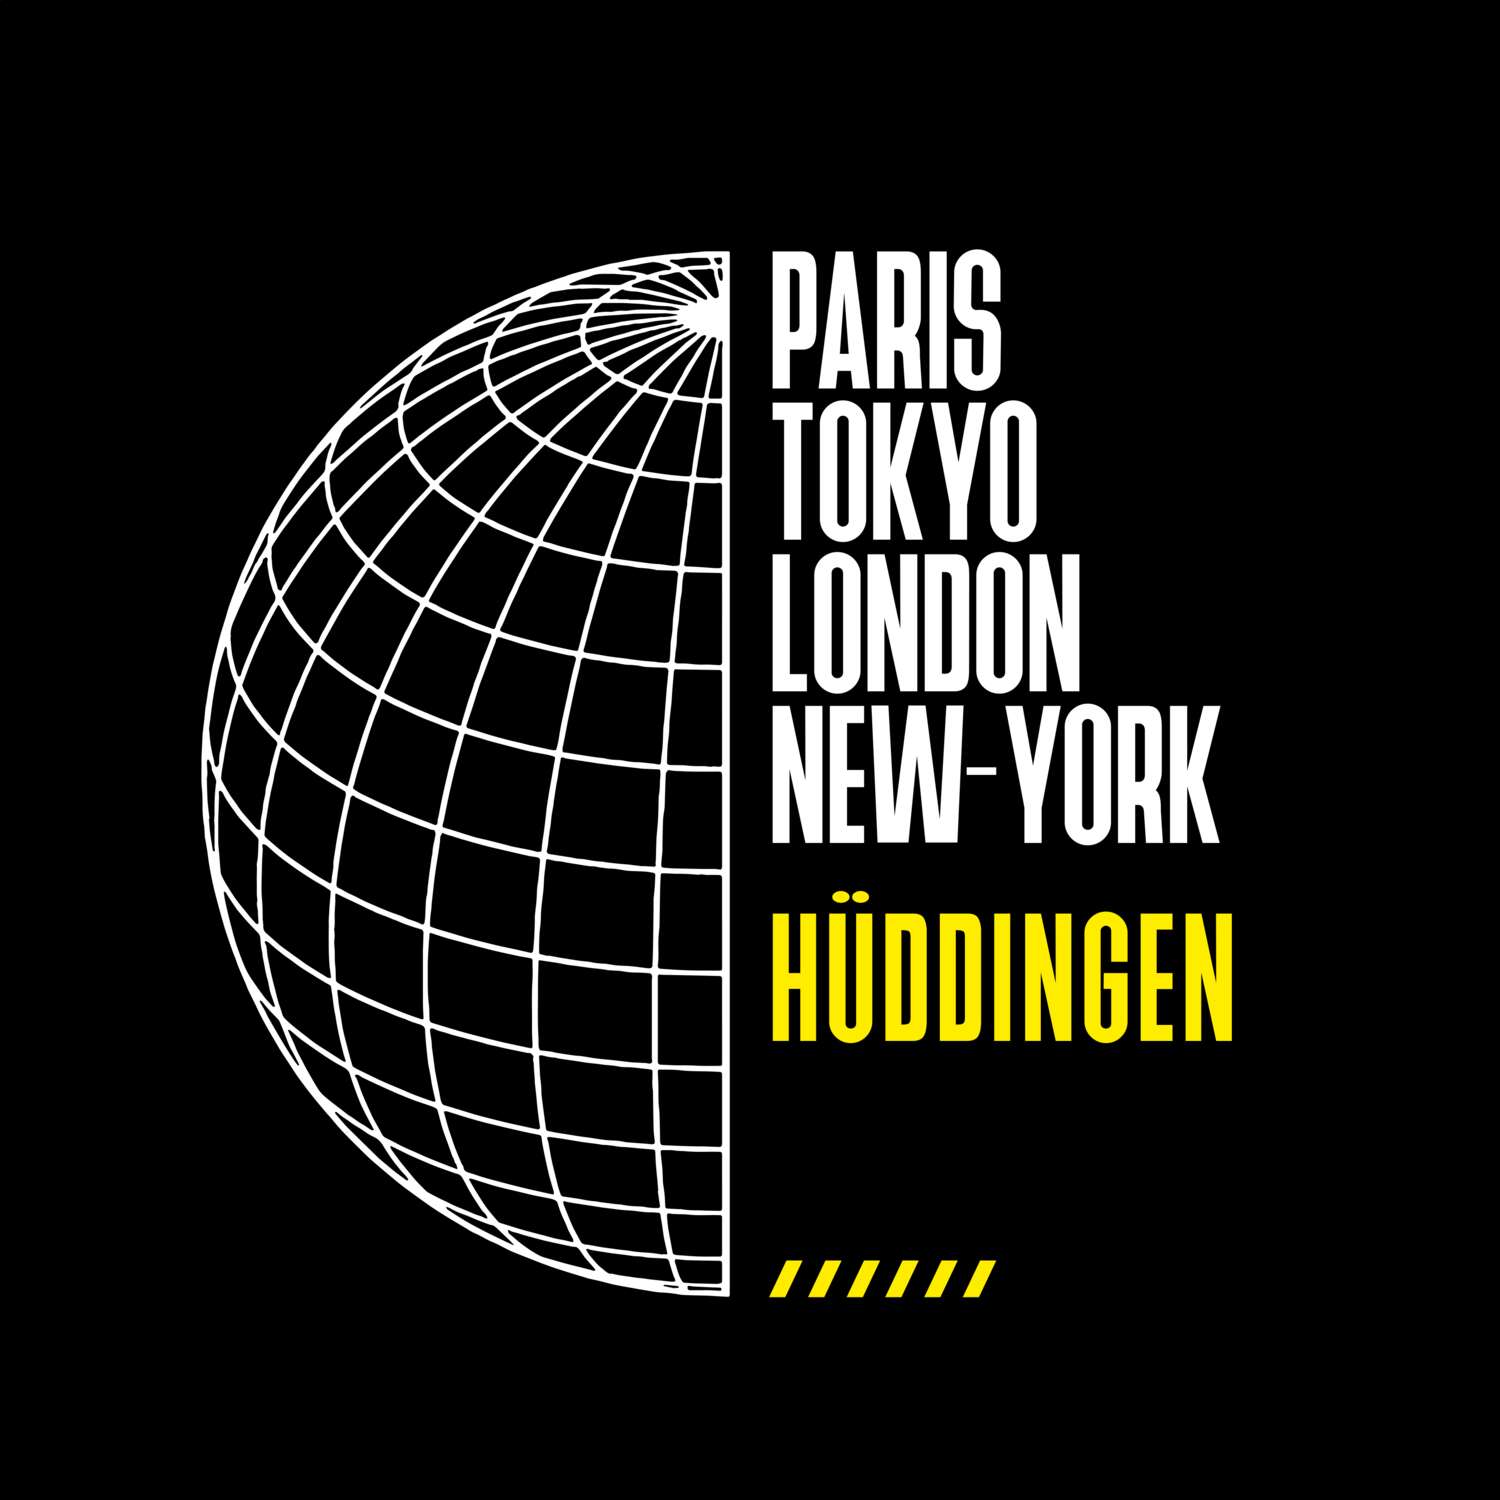 Hüddingen T-Shirt »Paris Tokyo London«